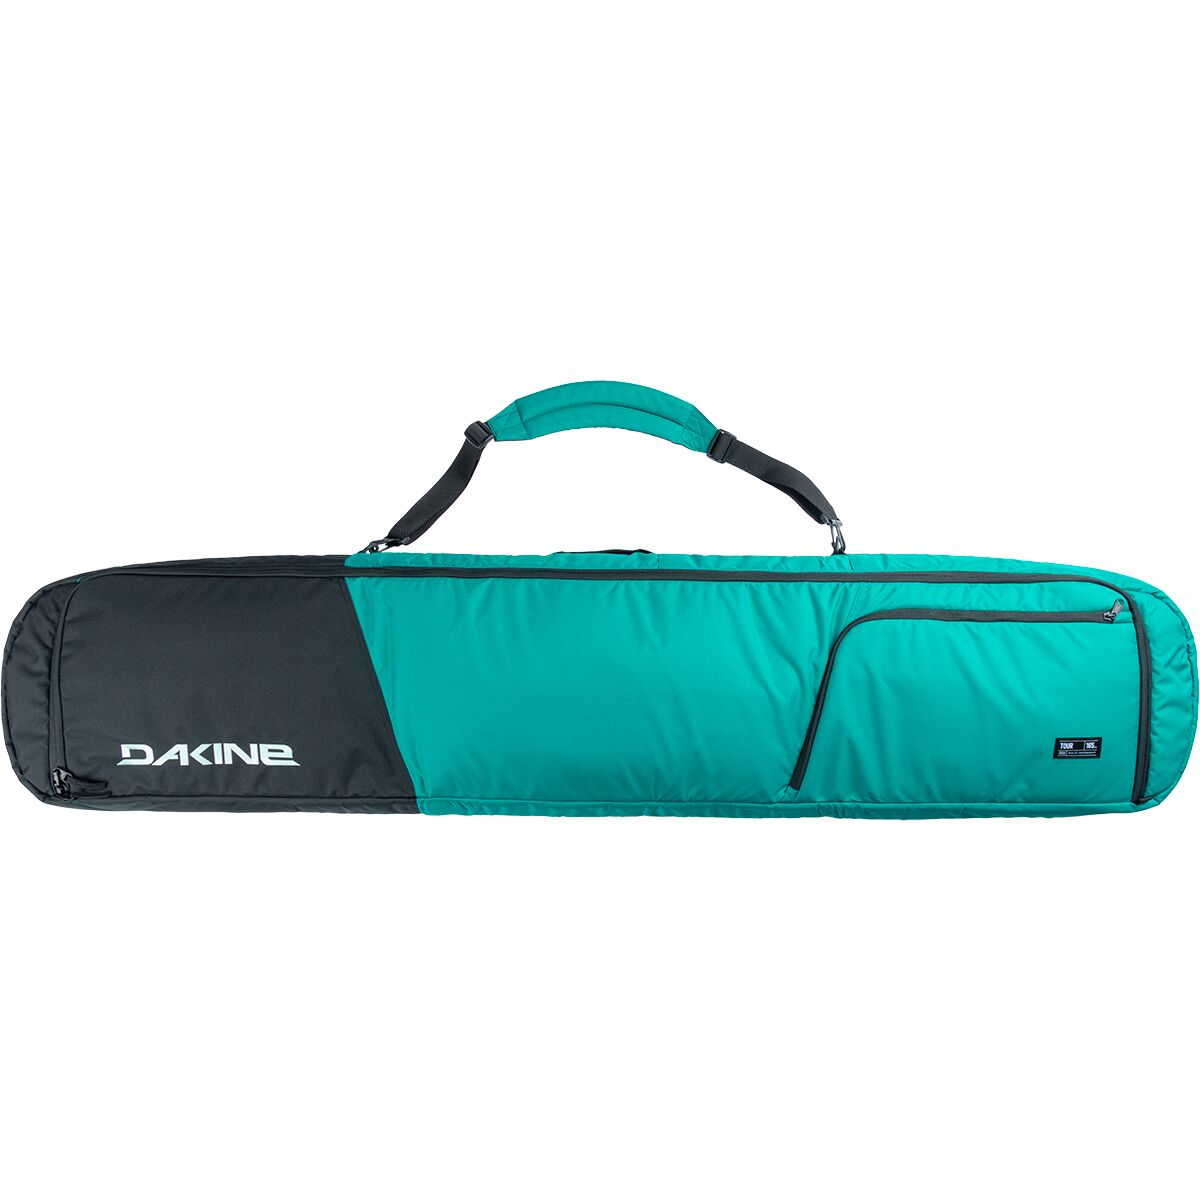 DAKINE Tour Snowboard Bag